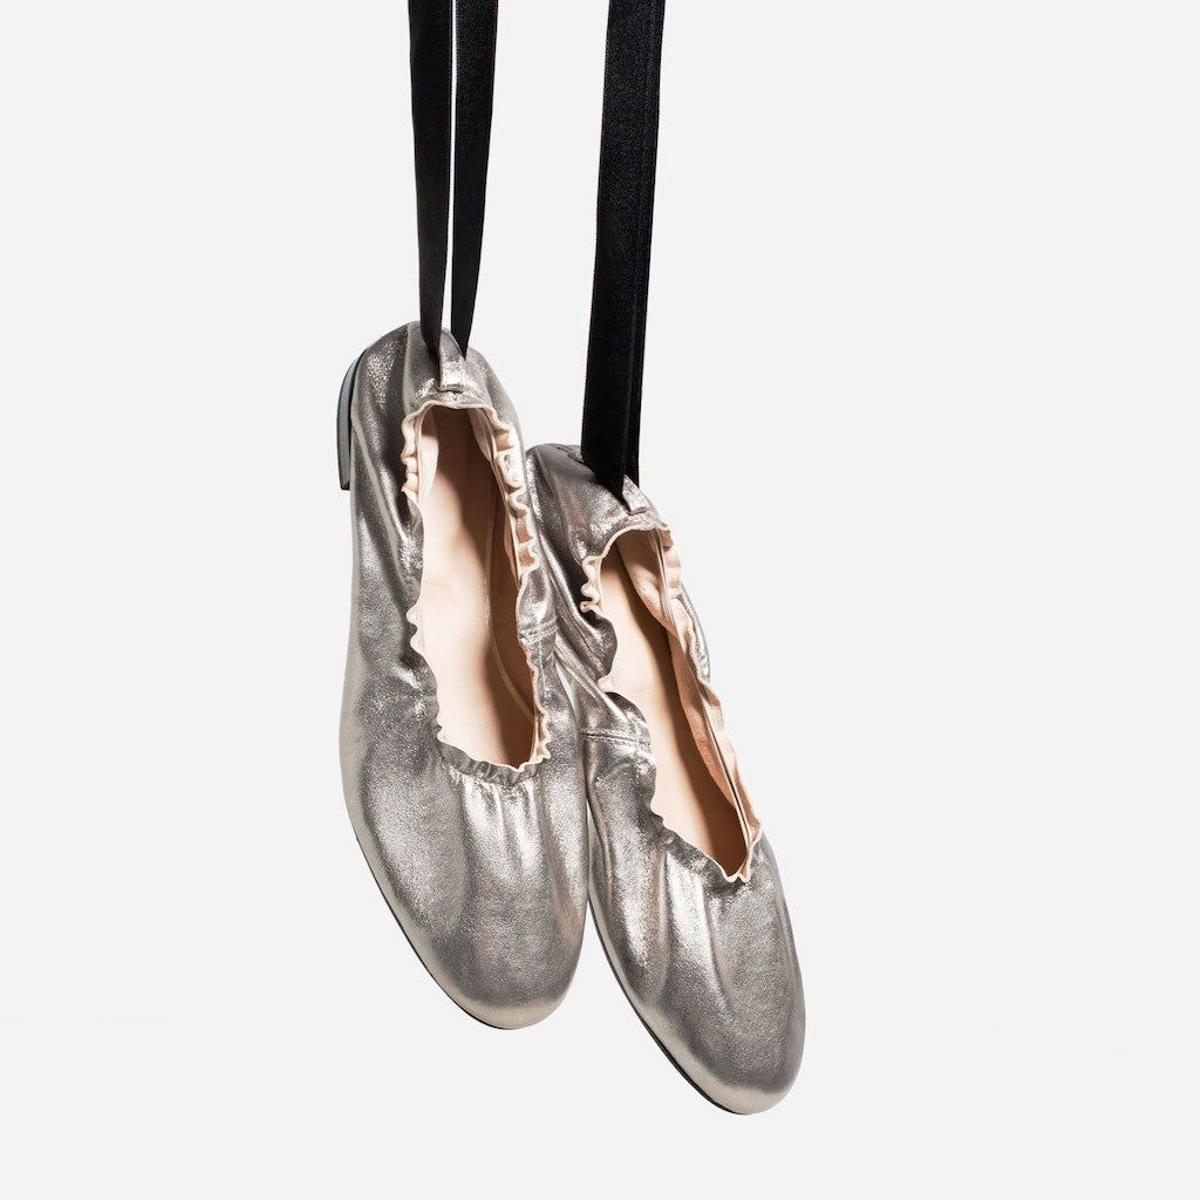 La nueva colección de Ballet de Zara